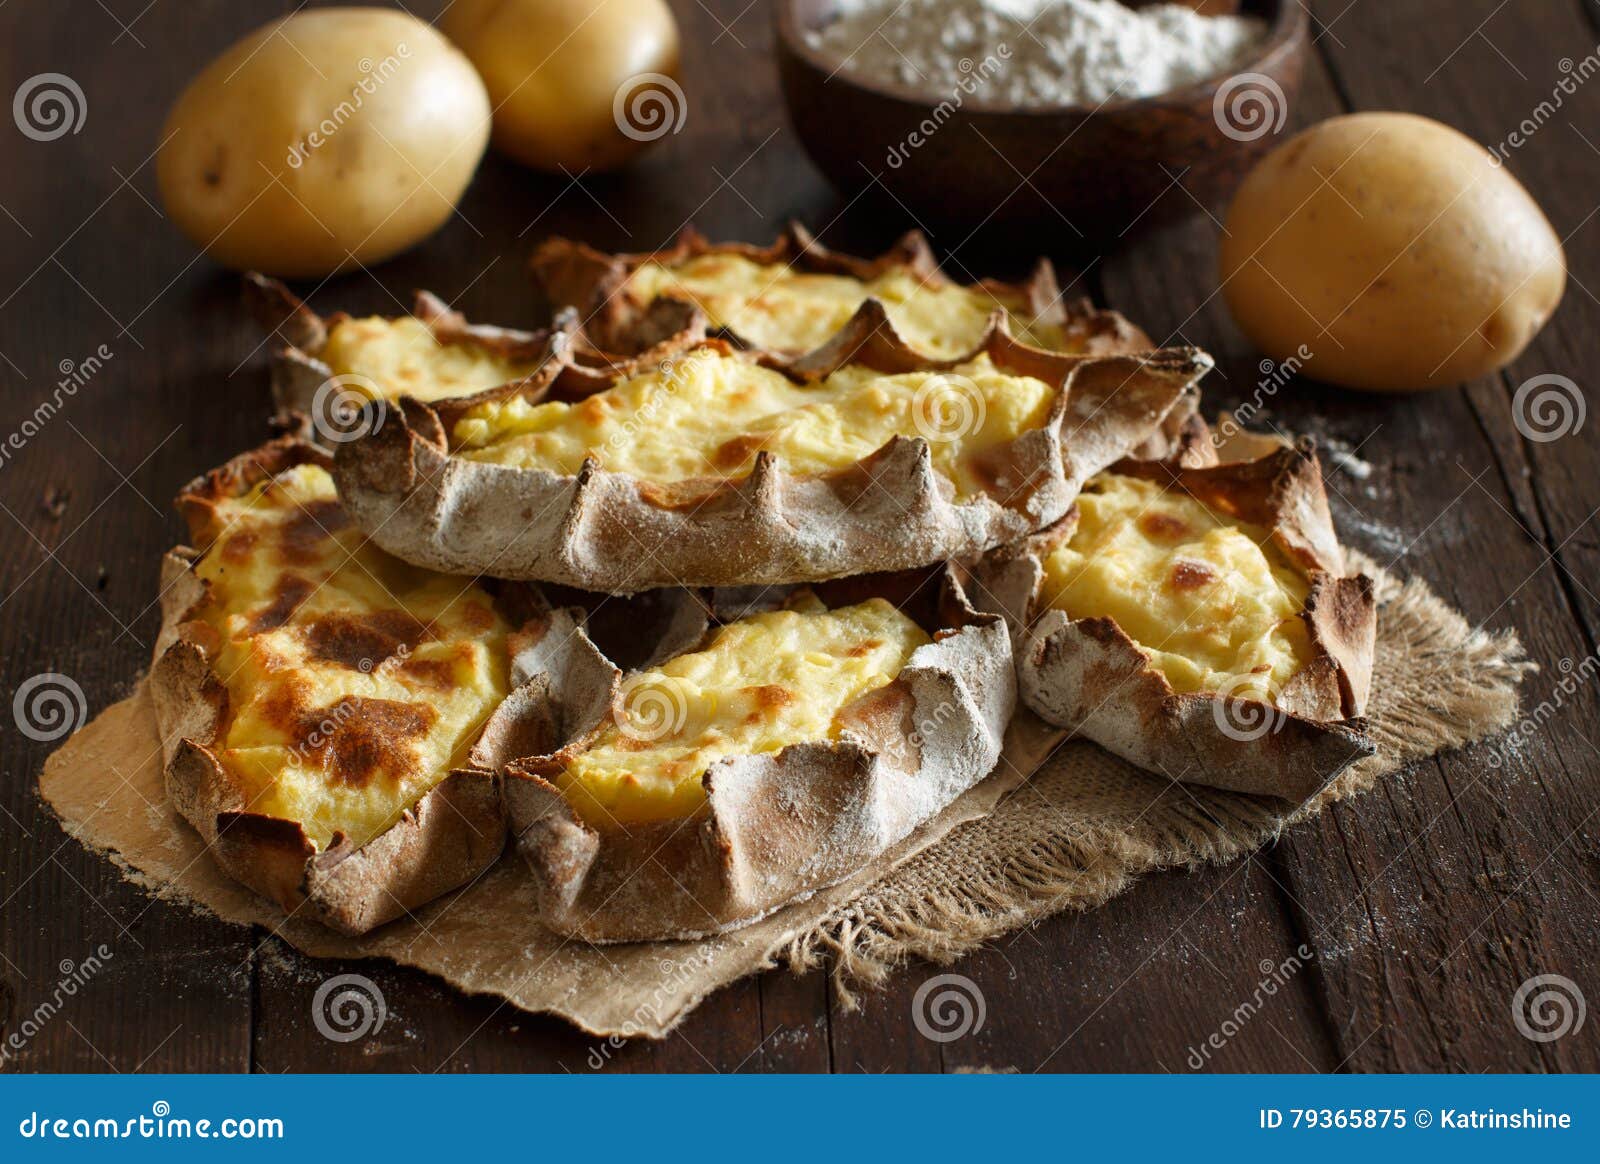 Traditionelle Karelische Pasteten Mit Kartoffeln Stockbild - Bild von ...